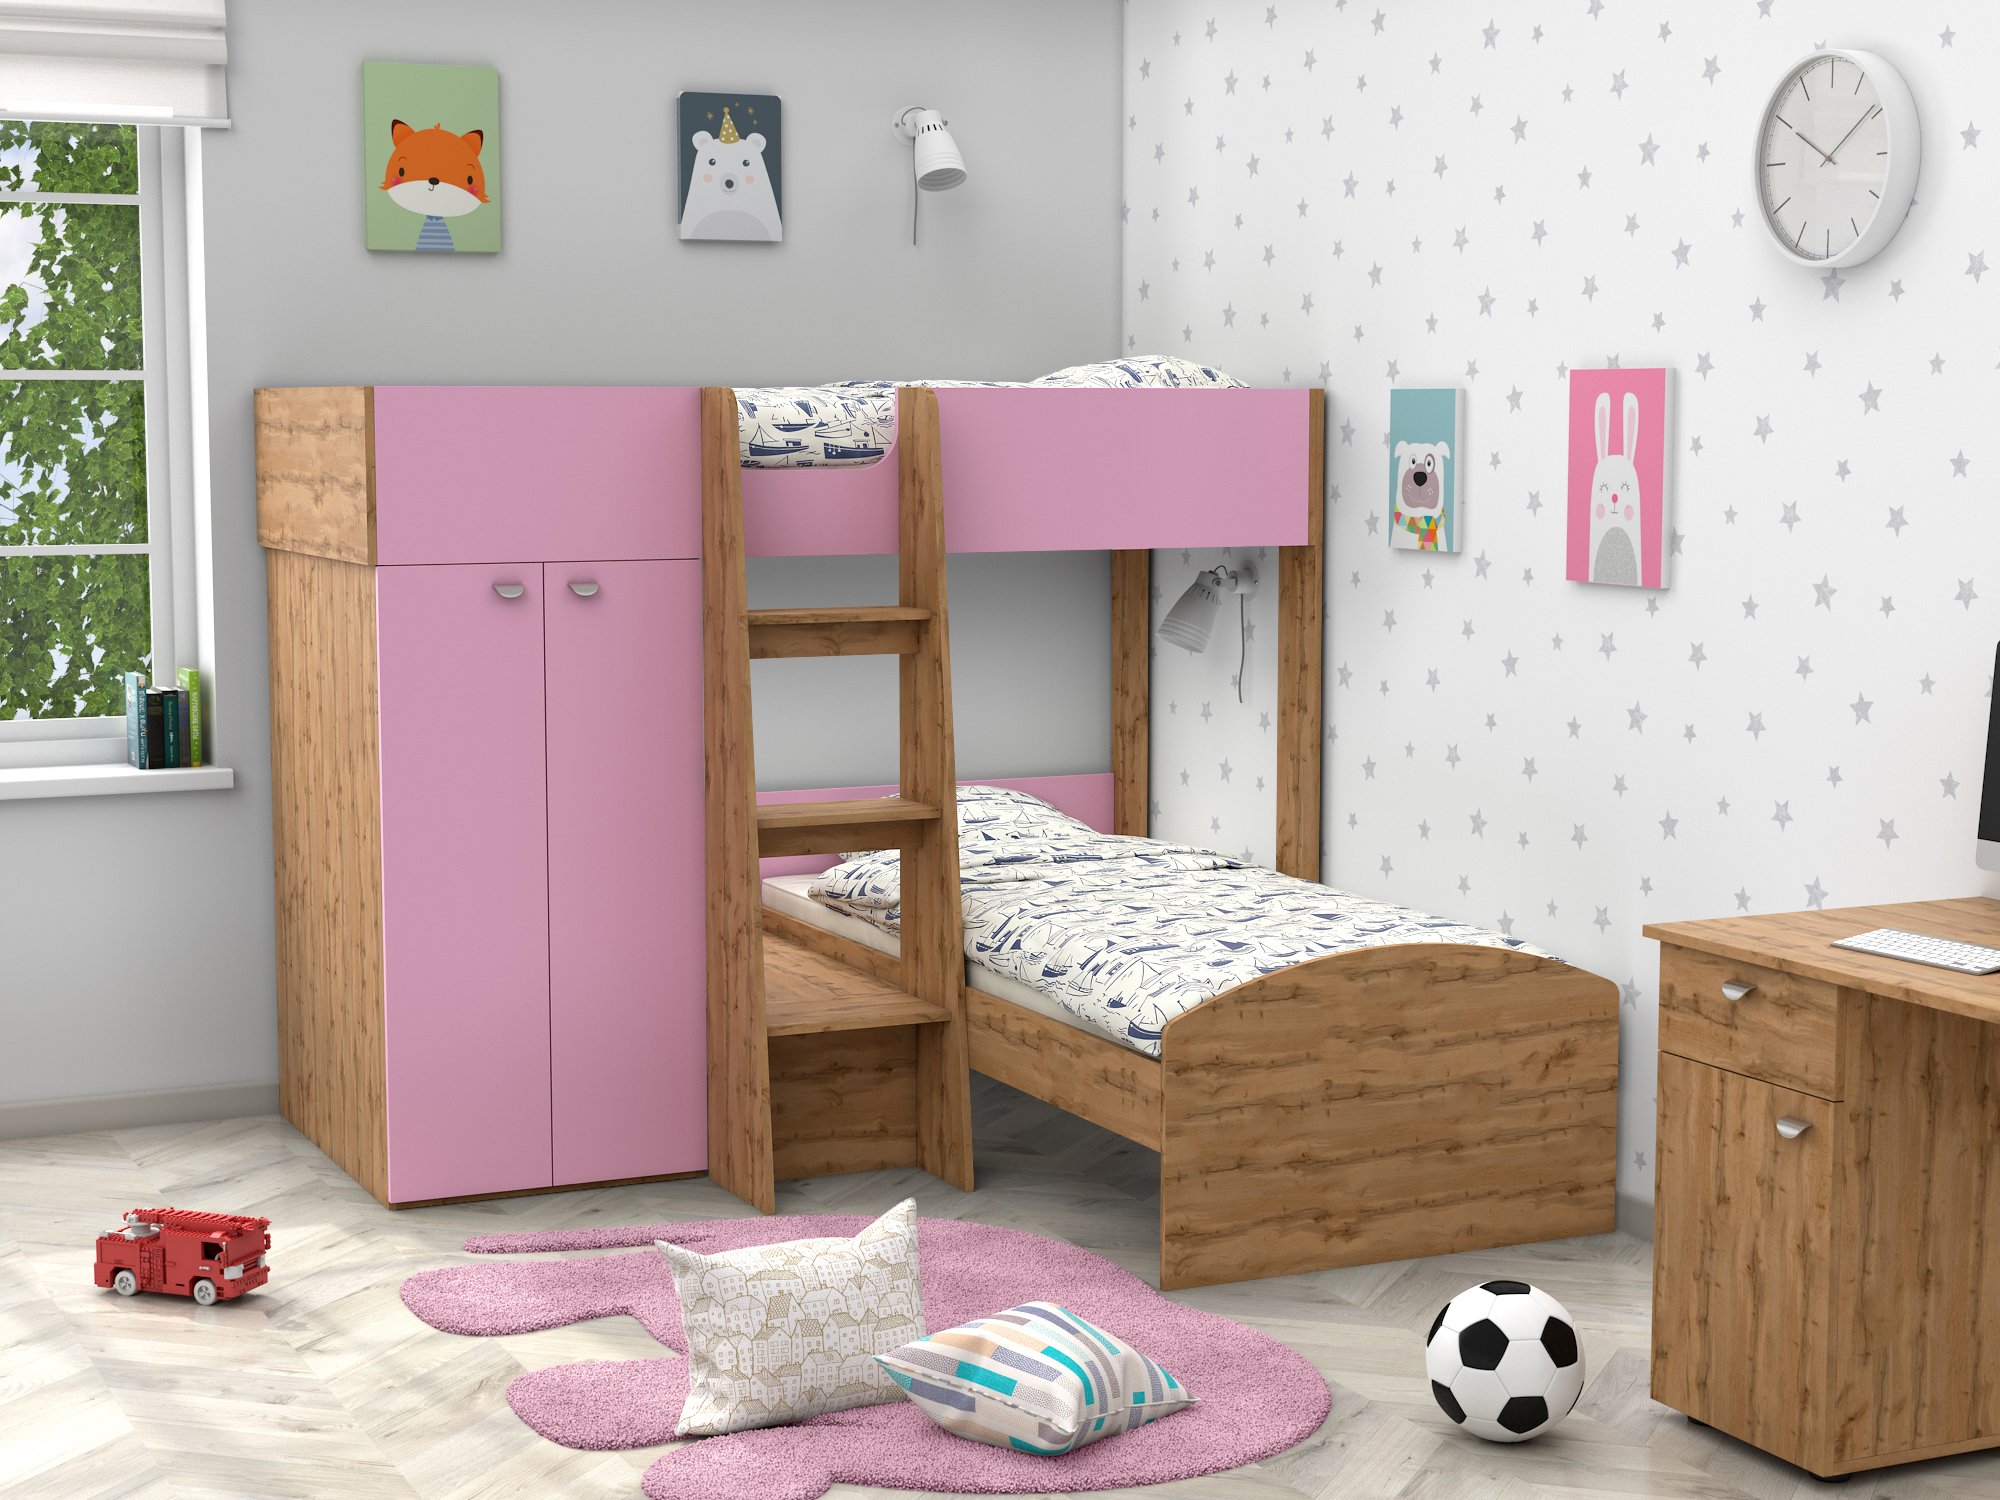 Двухъярусная кровать Golden Kids-4 (90х200) Розовый, Бежевый, ЛДСП двухъярусная кровать golden kids 4 90х200 голубой бежевый лдсп